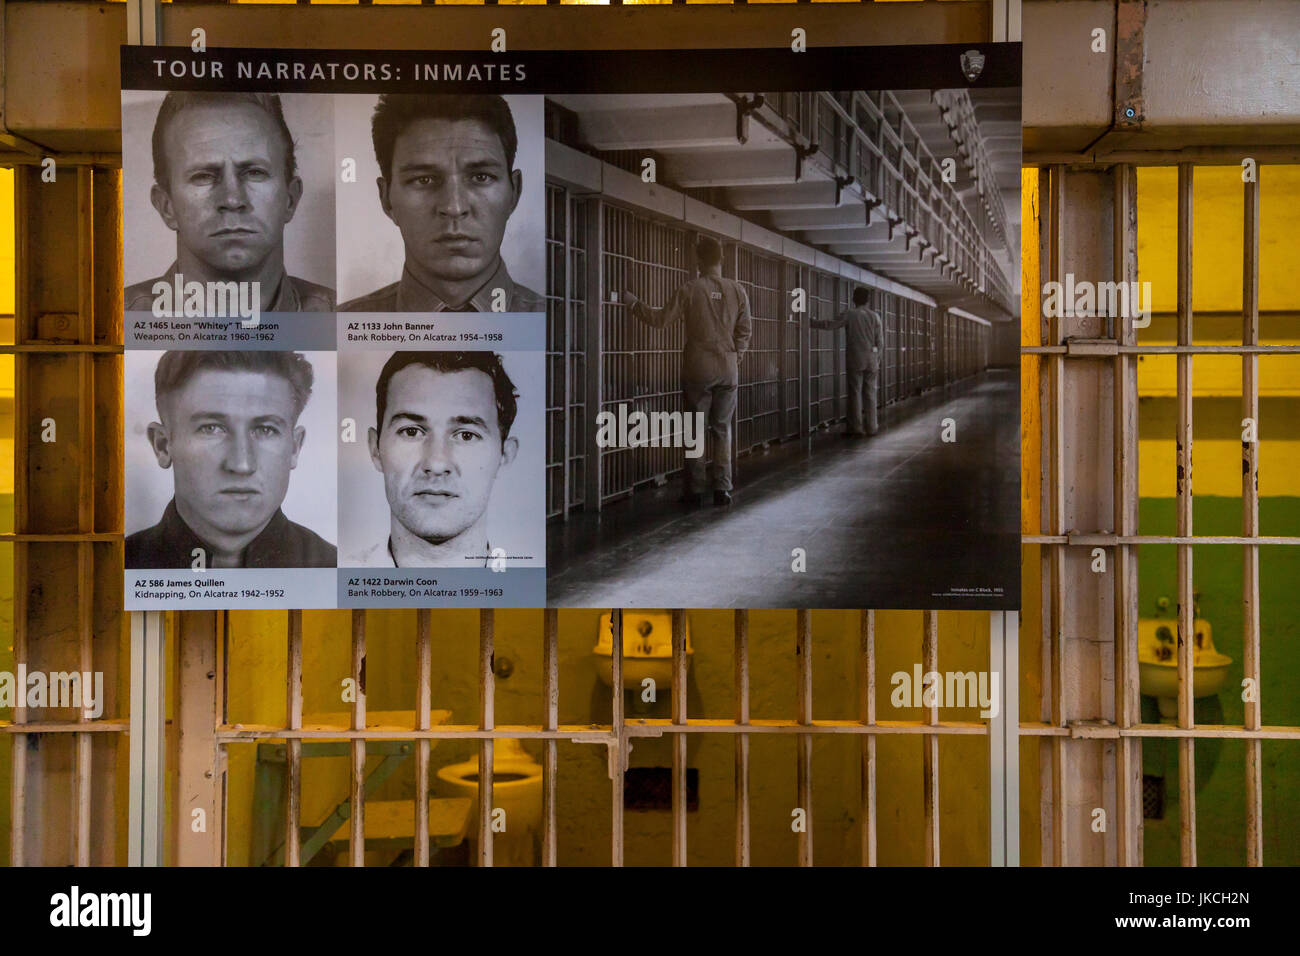 Poster of tour narrators in prison cell, Alcatraz penitentiary, San Francisco, California, USA Stock Photo